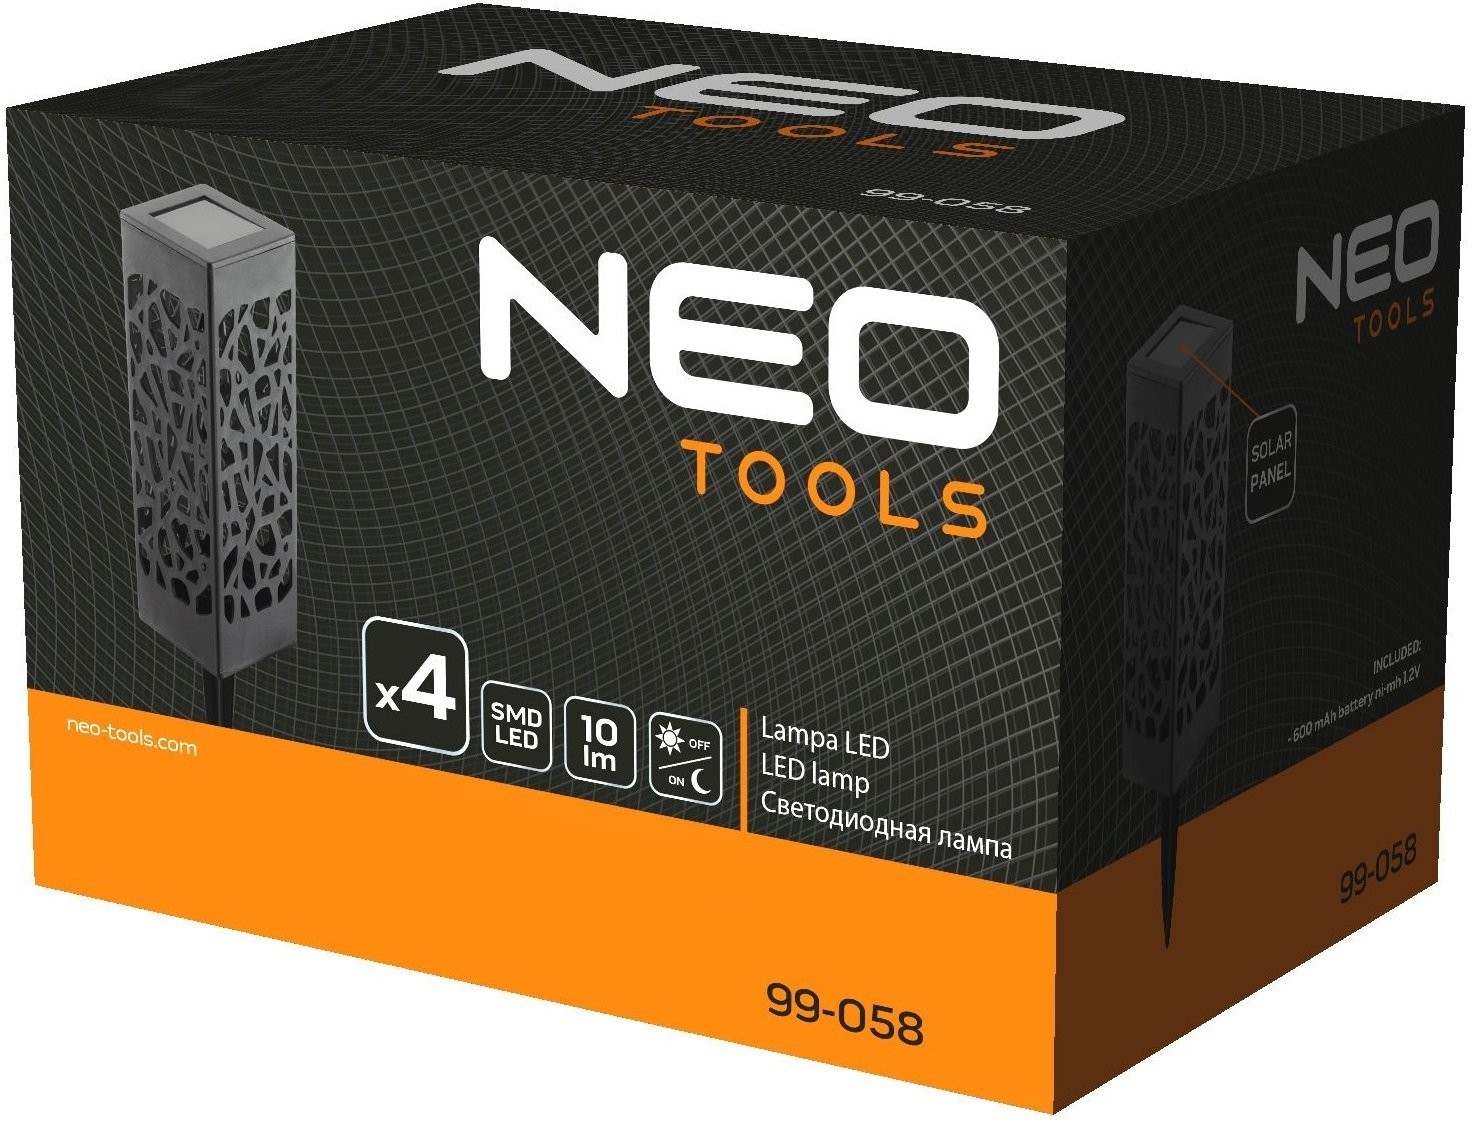 продаём Neo Tools 99-058 в Украине - фото 4